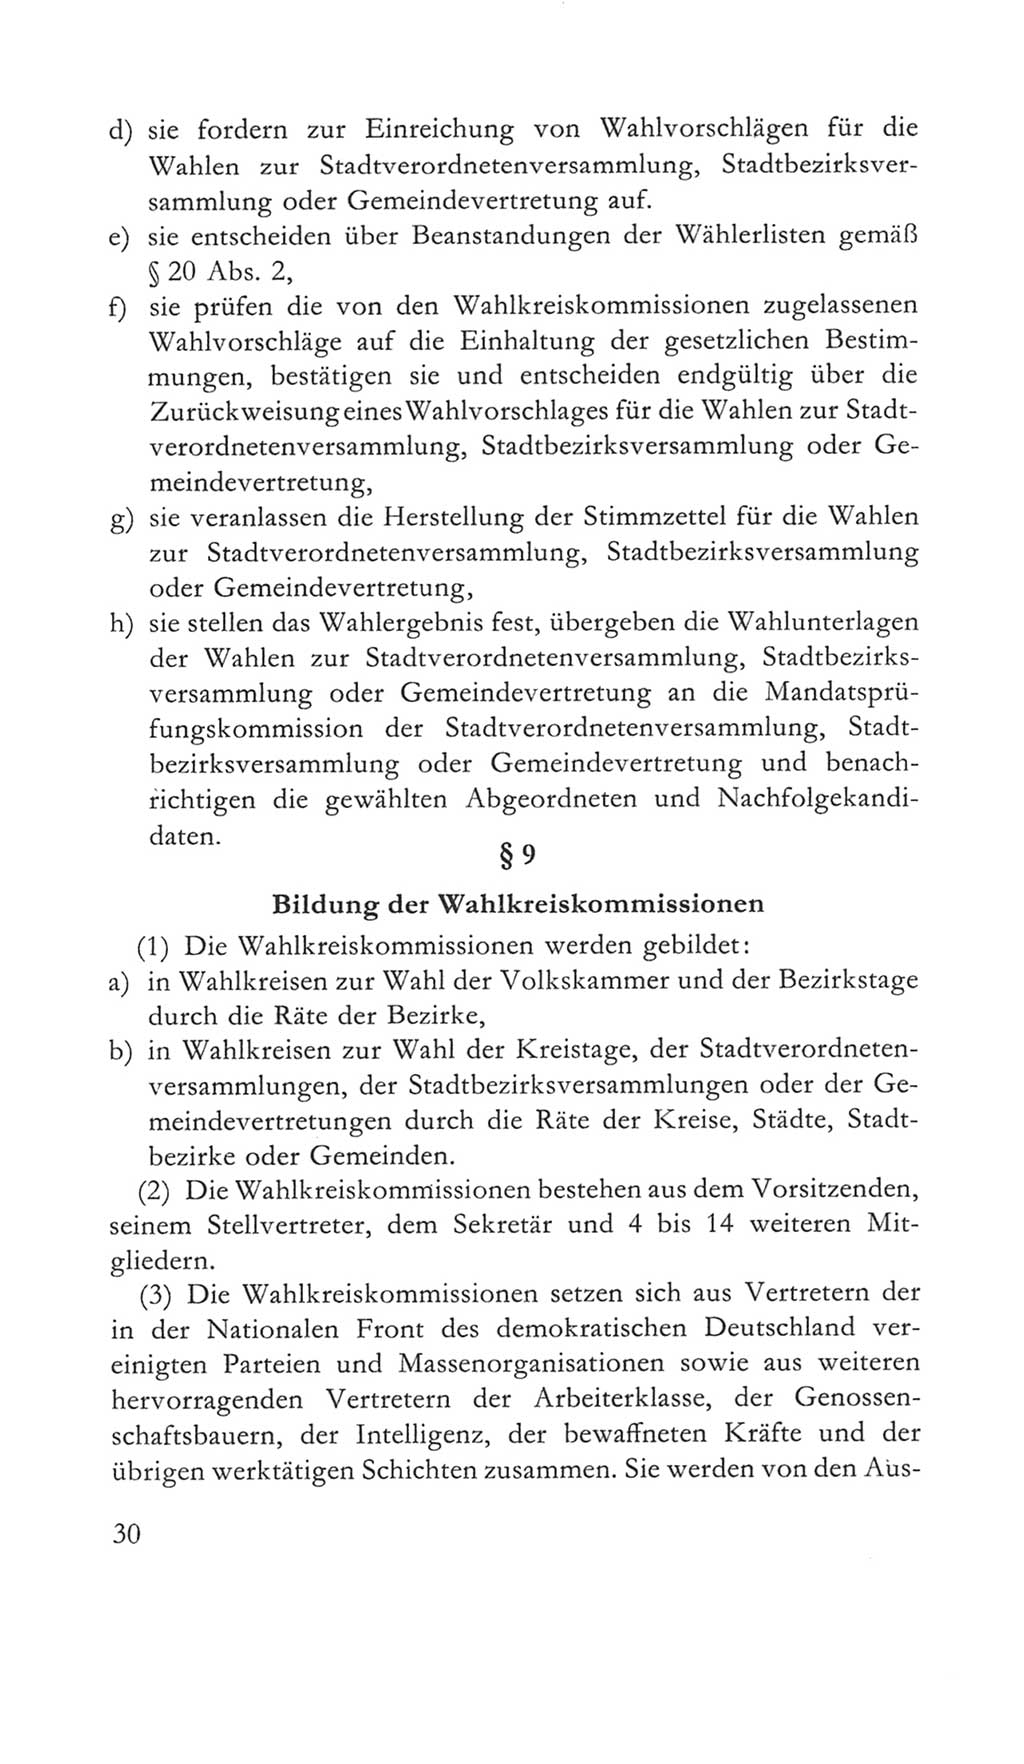 Volkskammer (VK) der Deutschen Demokratischen Republik (DDR) 5. Wahlperiode 1967-1971, Seite 30 (VK. DDR 5. WP. 1967-1971, S. 30)